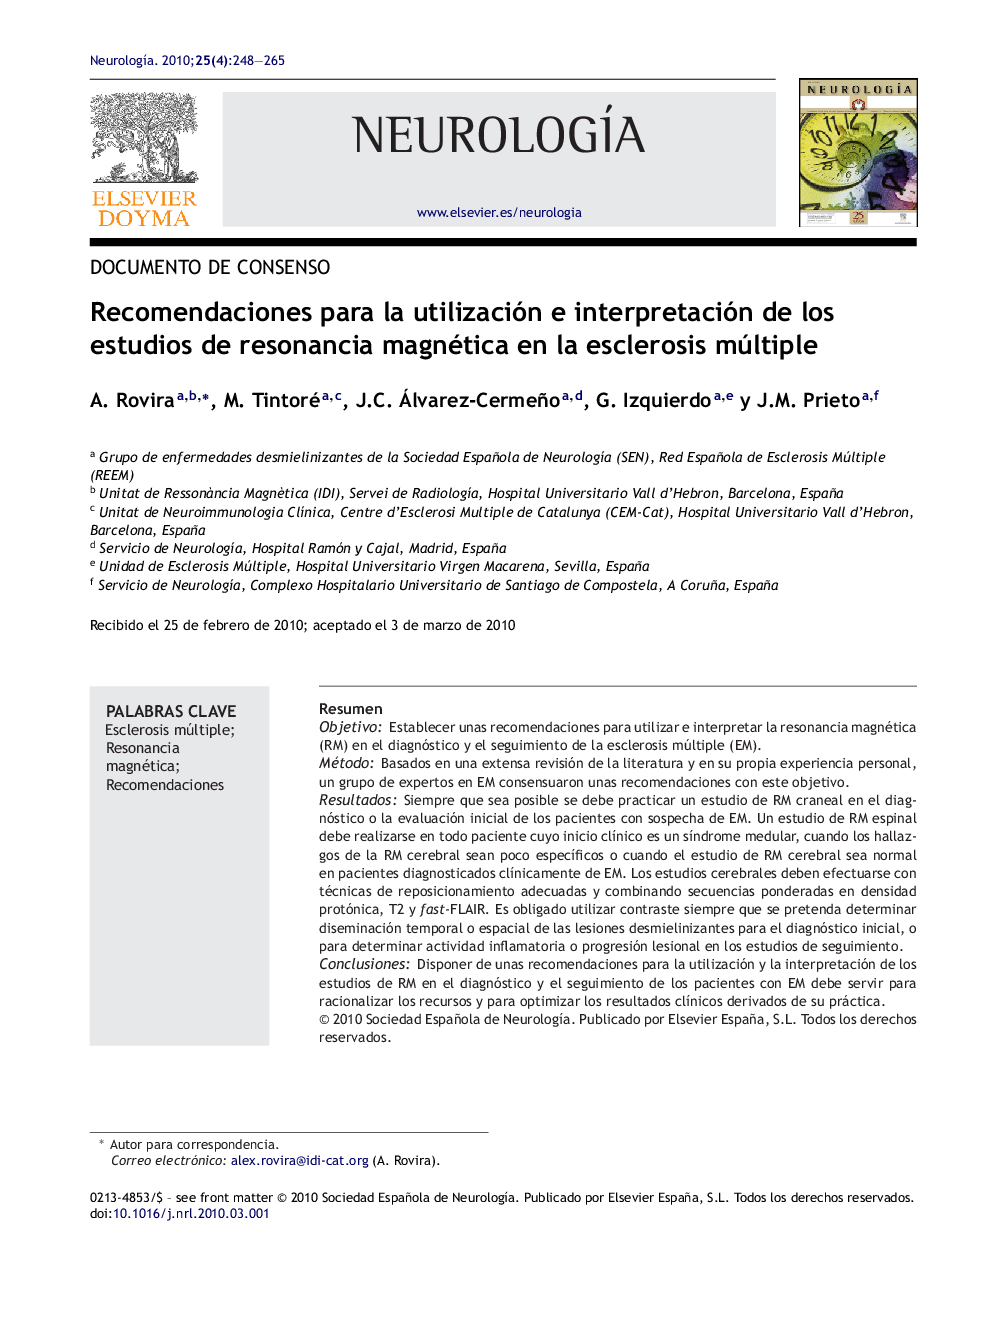 Recomendaciones para la utilización e interpretación de los estudios de resonancia magnética en la esclerosis múltiple